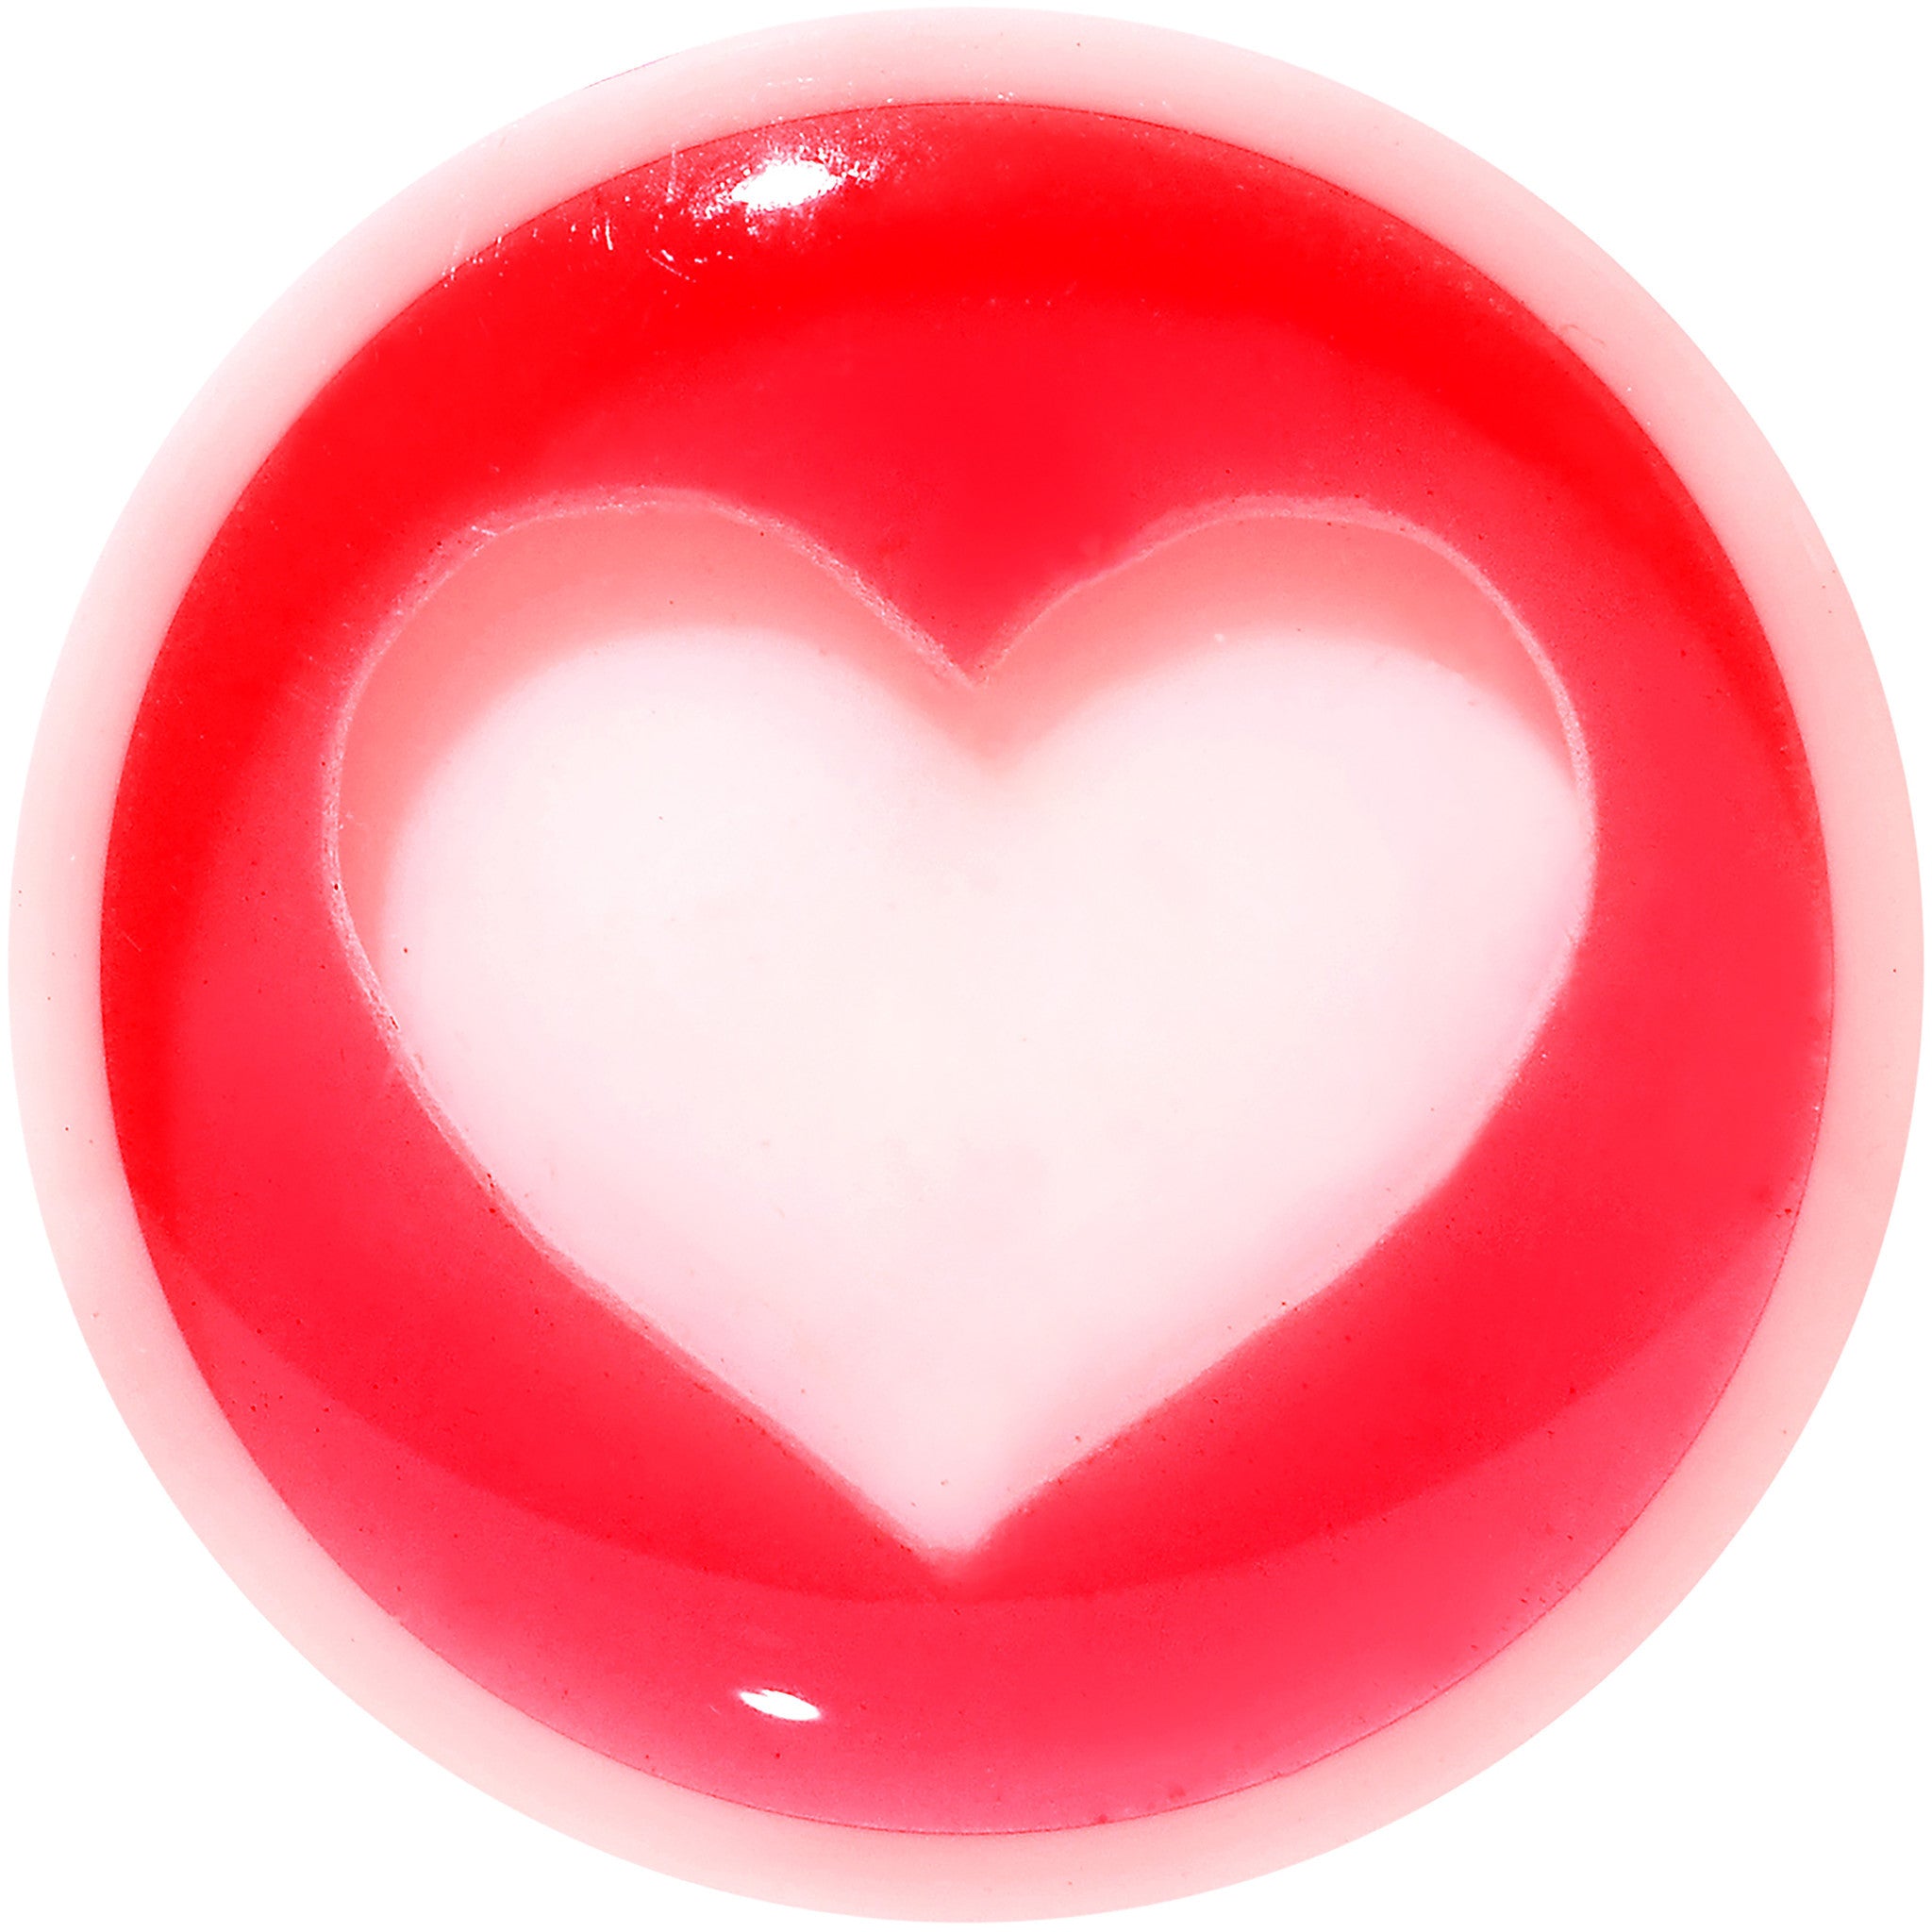 00 Gauge White Red Acrylic Adoring Heart Saddle Plug